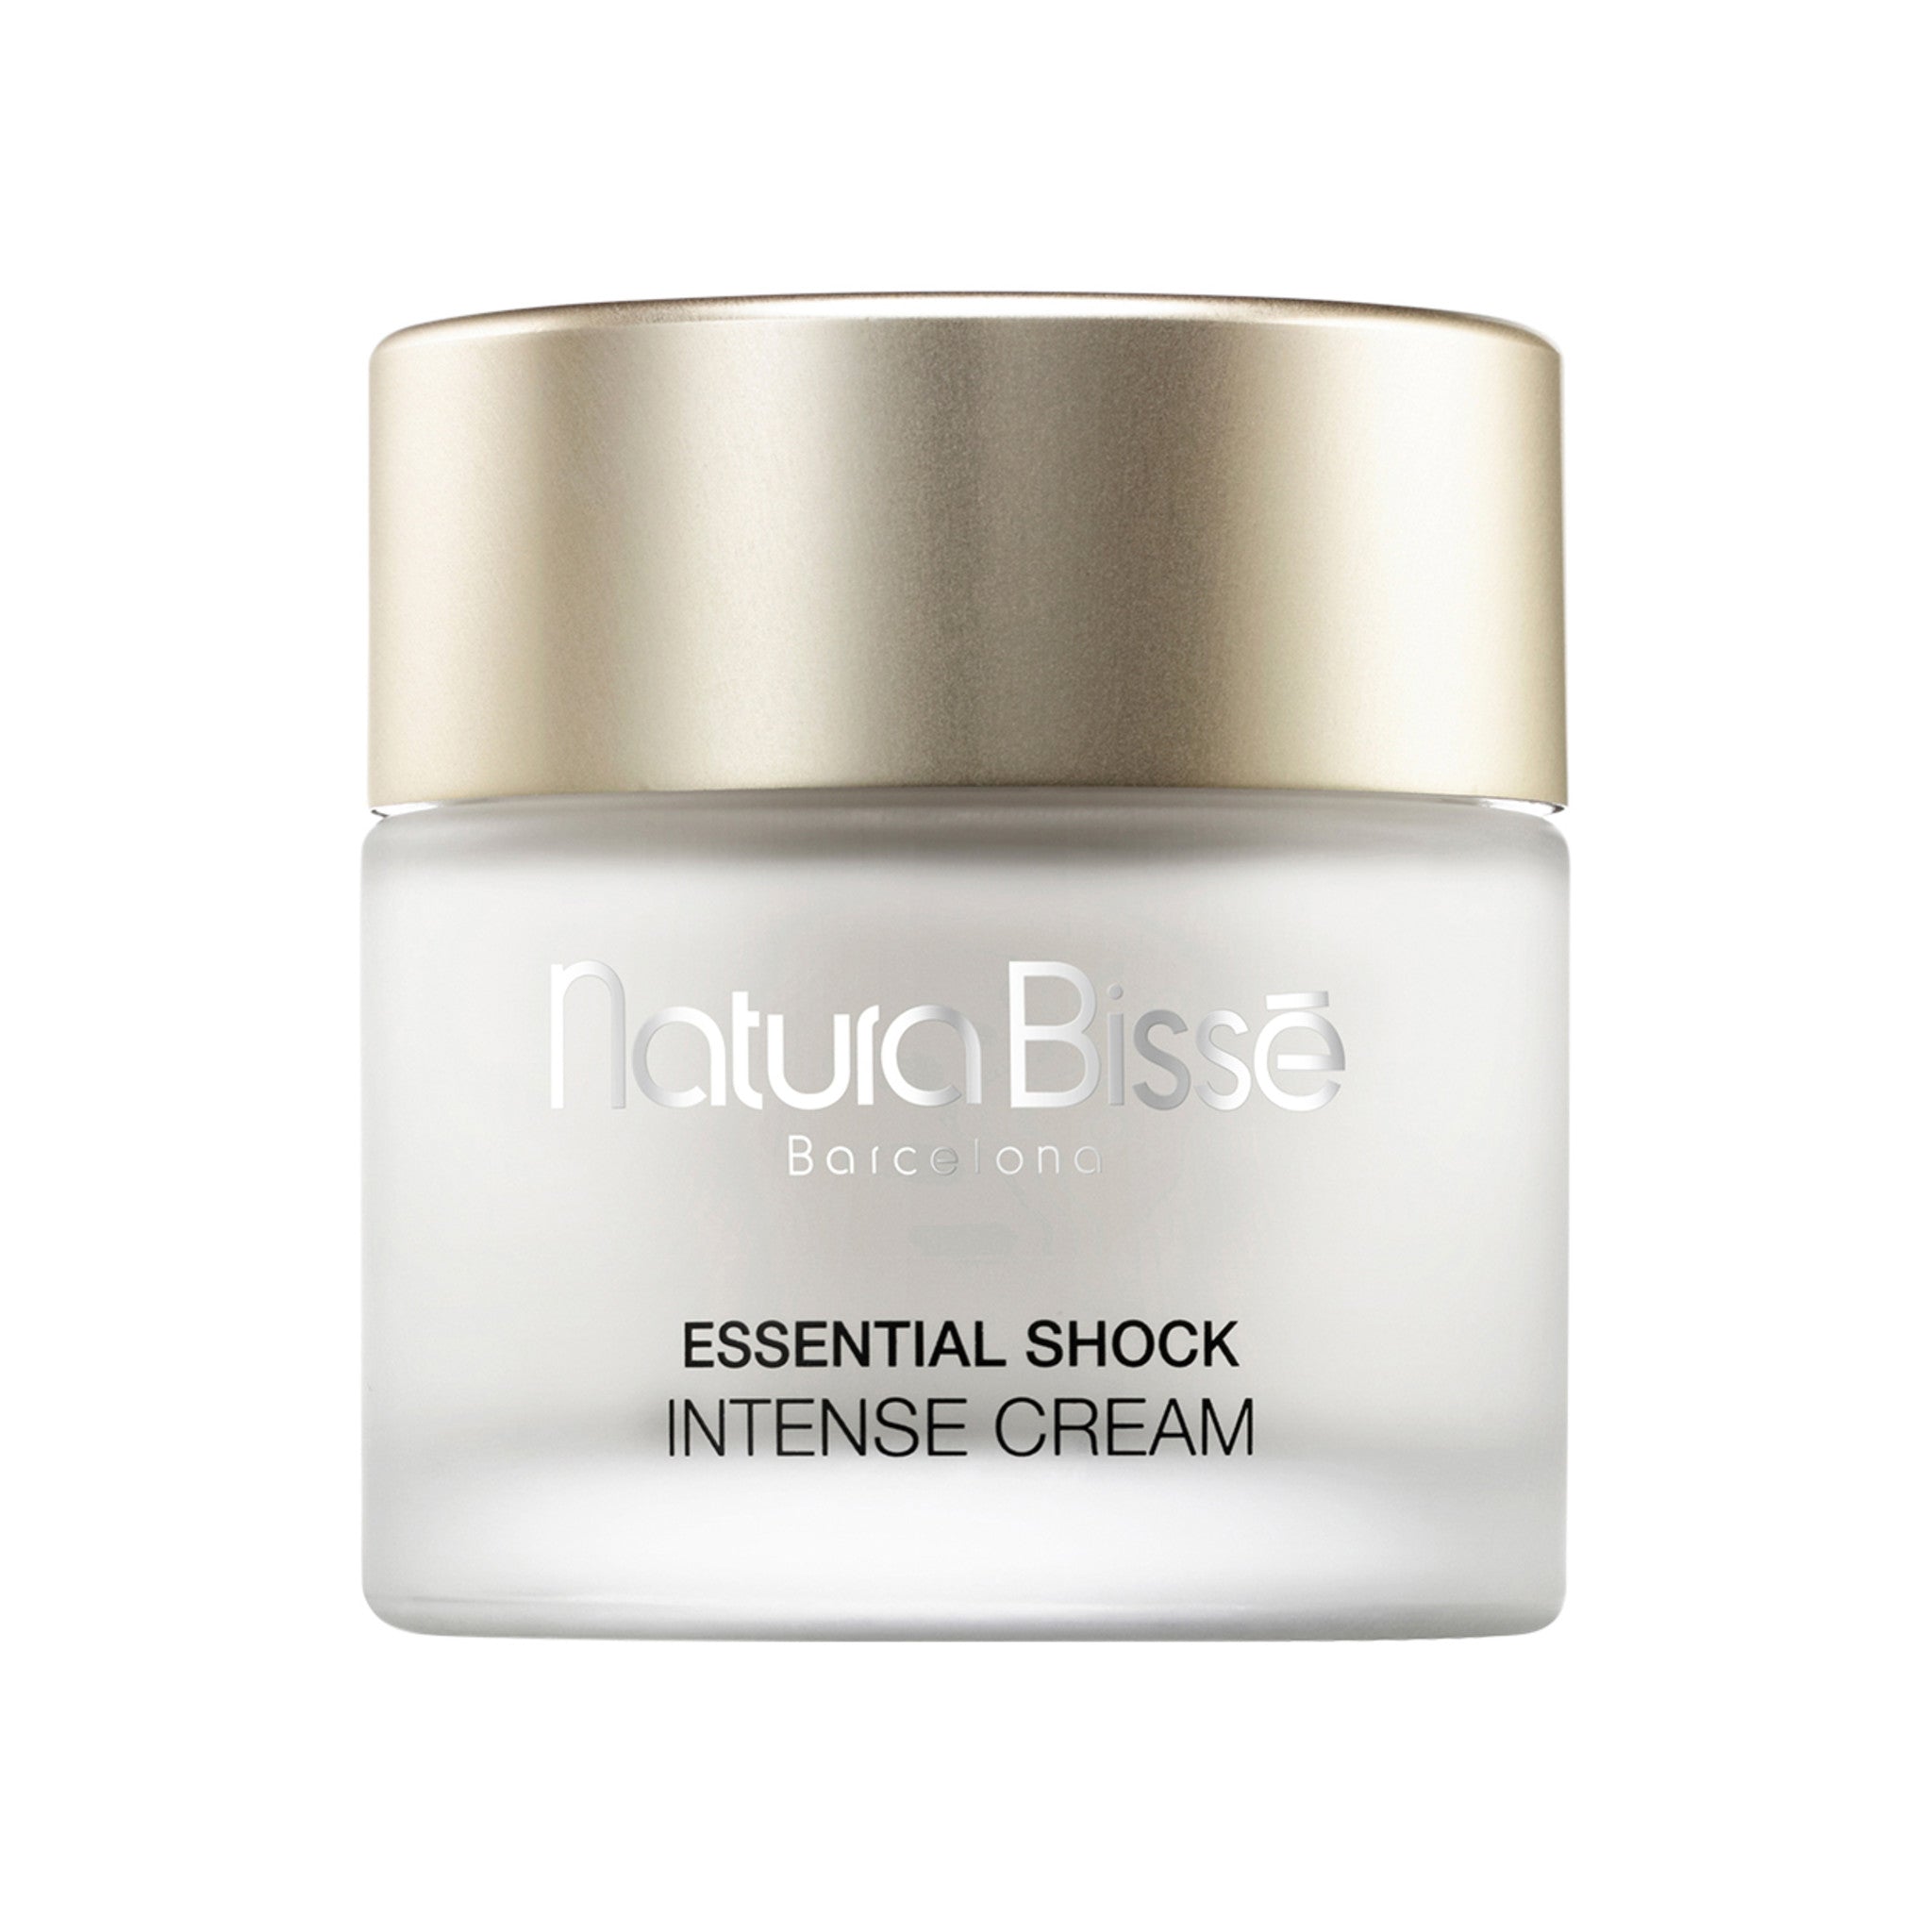 Essential Shock Intense Cream main image.